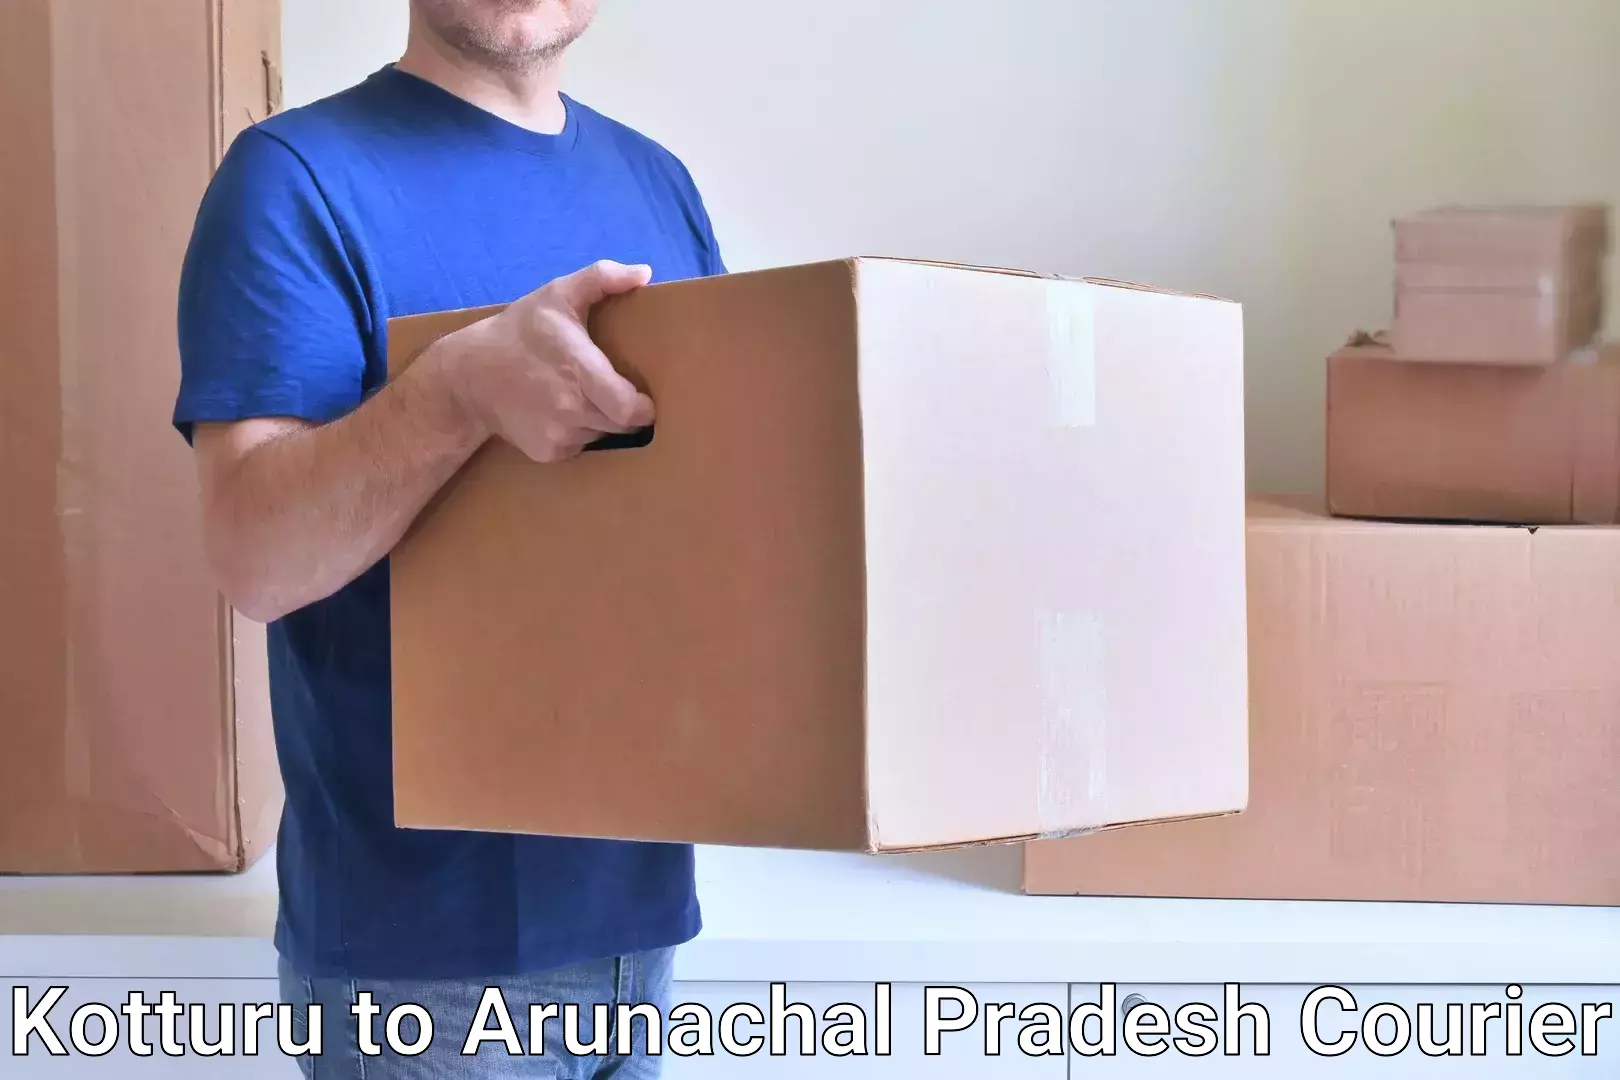 Local courier options Kotturu to Arunachal Pradesh